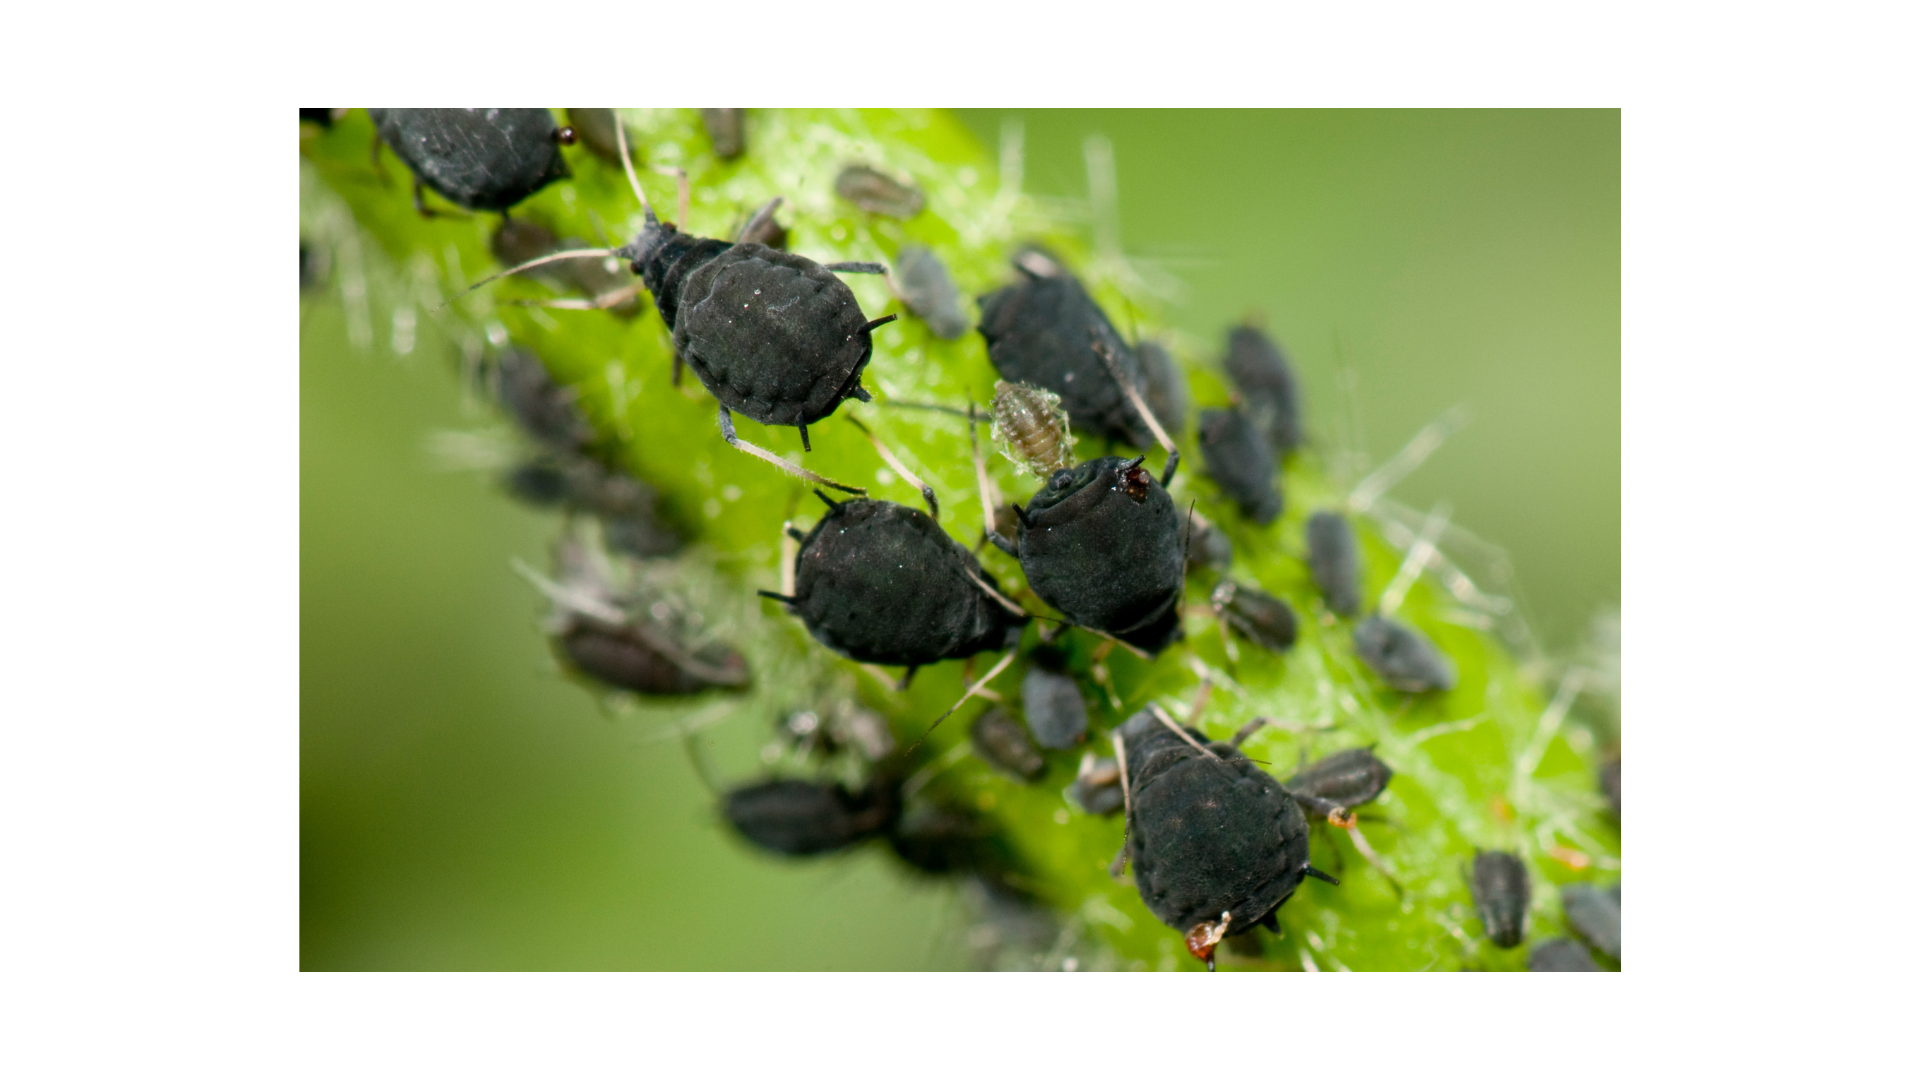 Groupe de pucerons noirs se regroupant densément sur une tige verte, illustrant un défi courant dans le jardinage naturel.